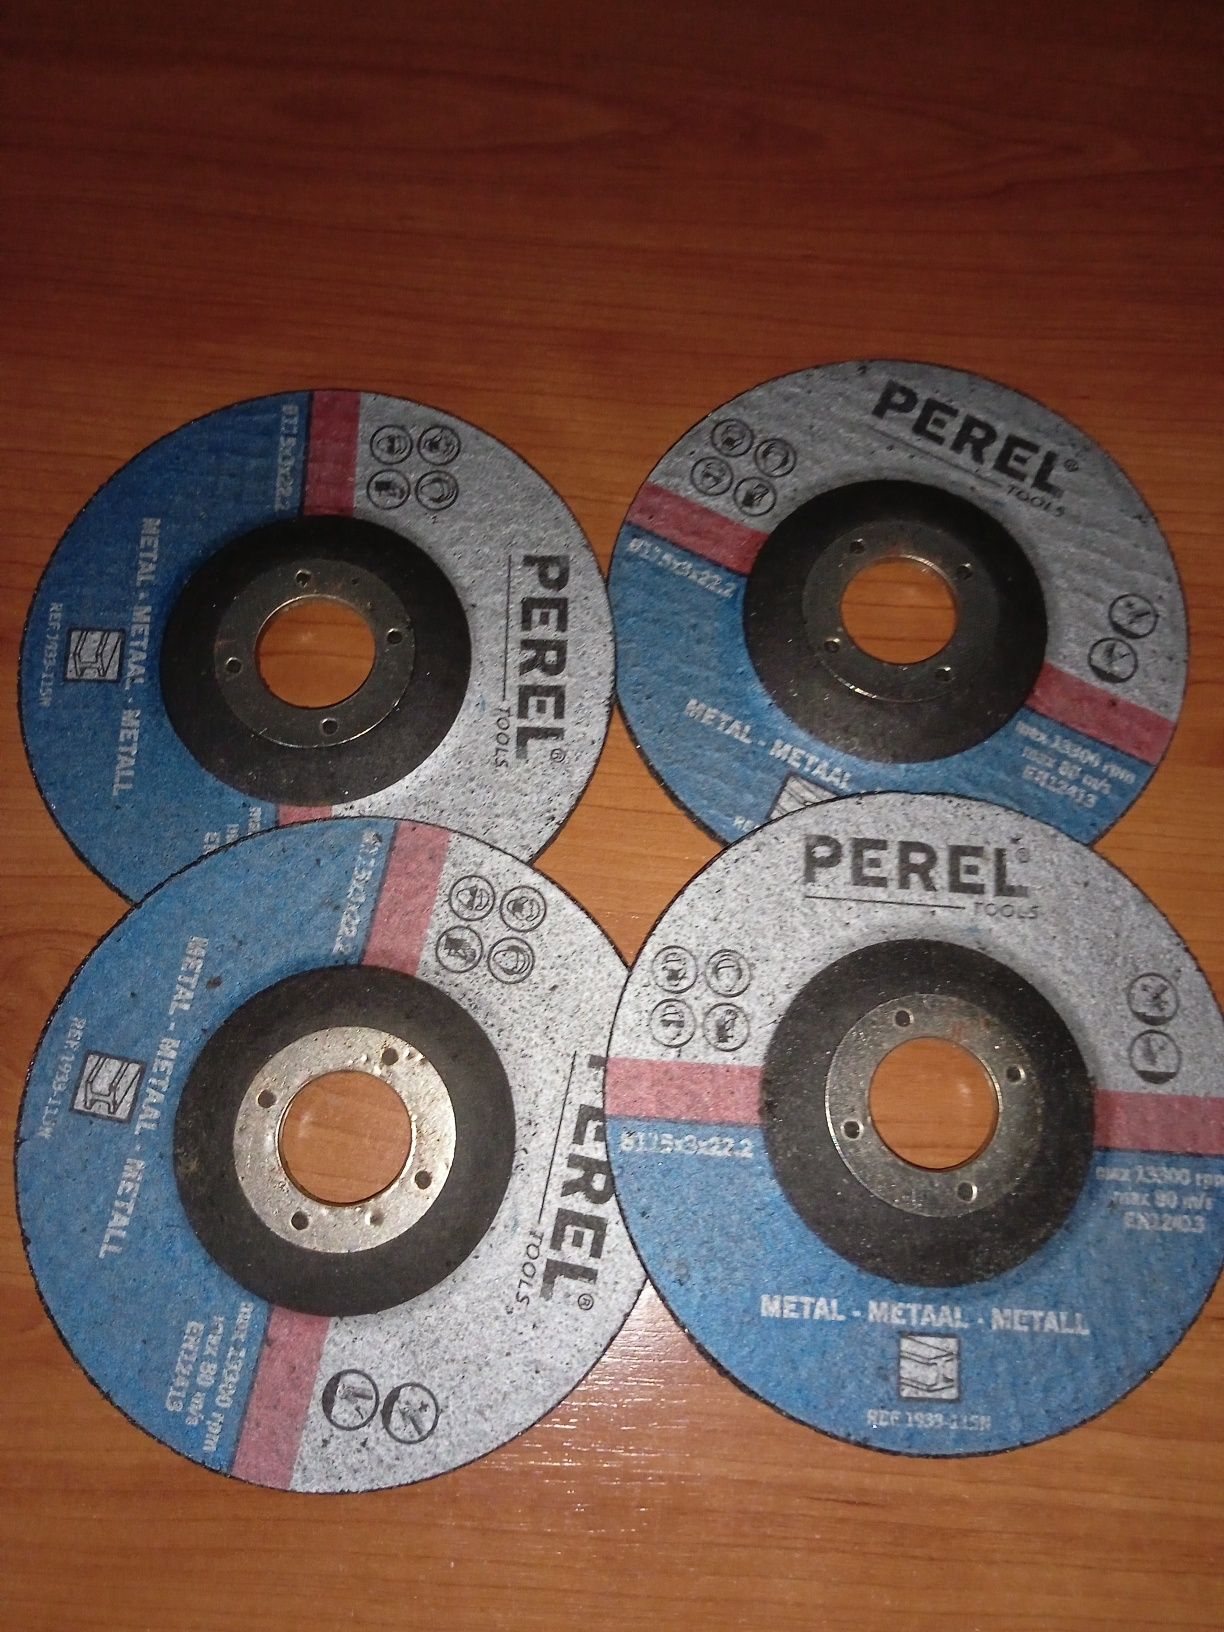 4 discos Perel novos - rebarbadora